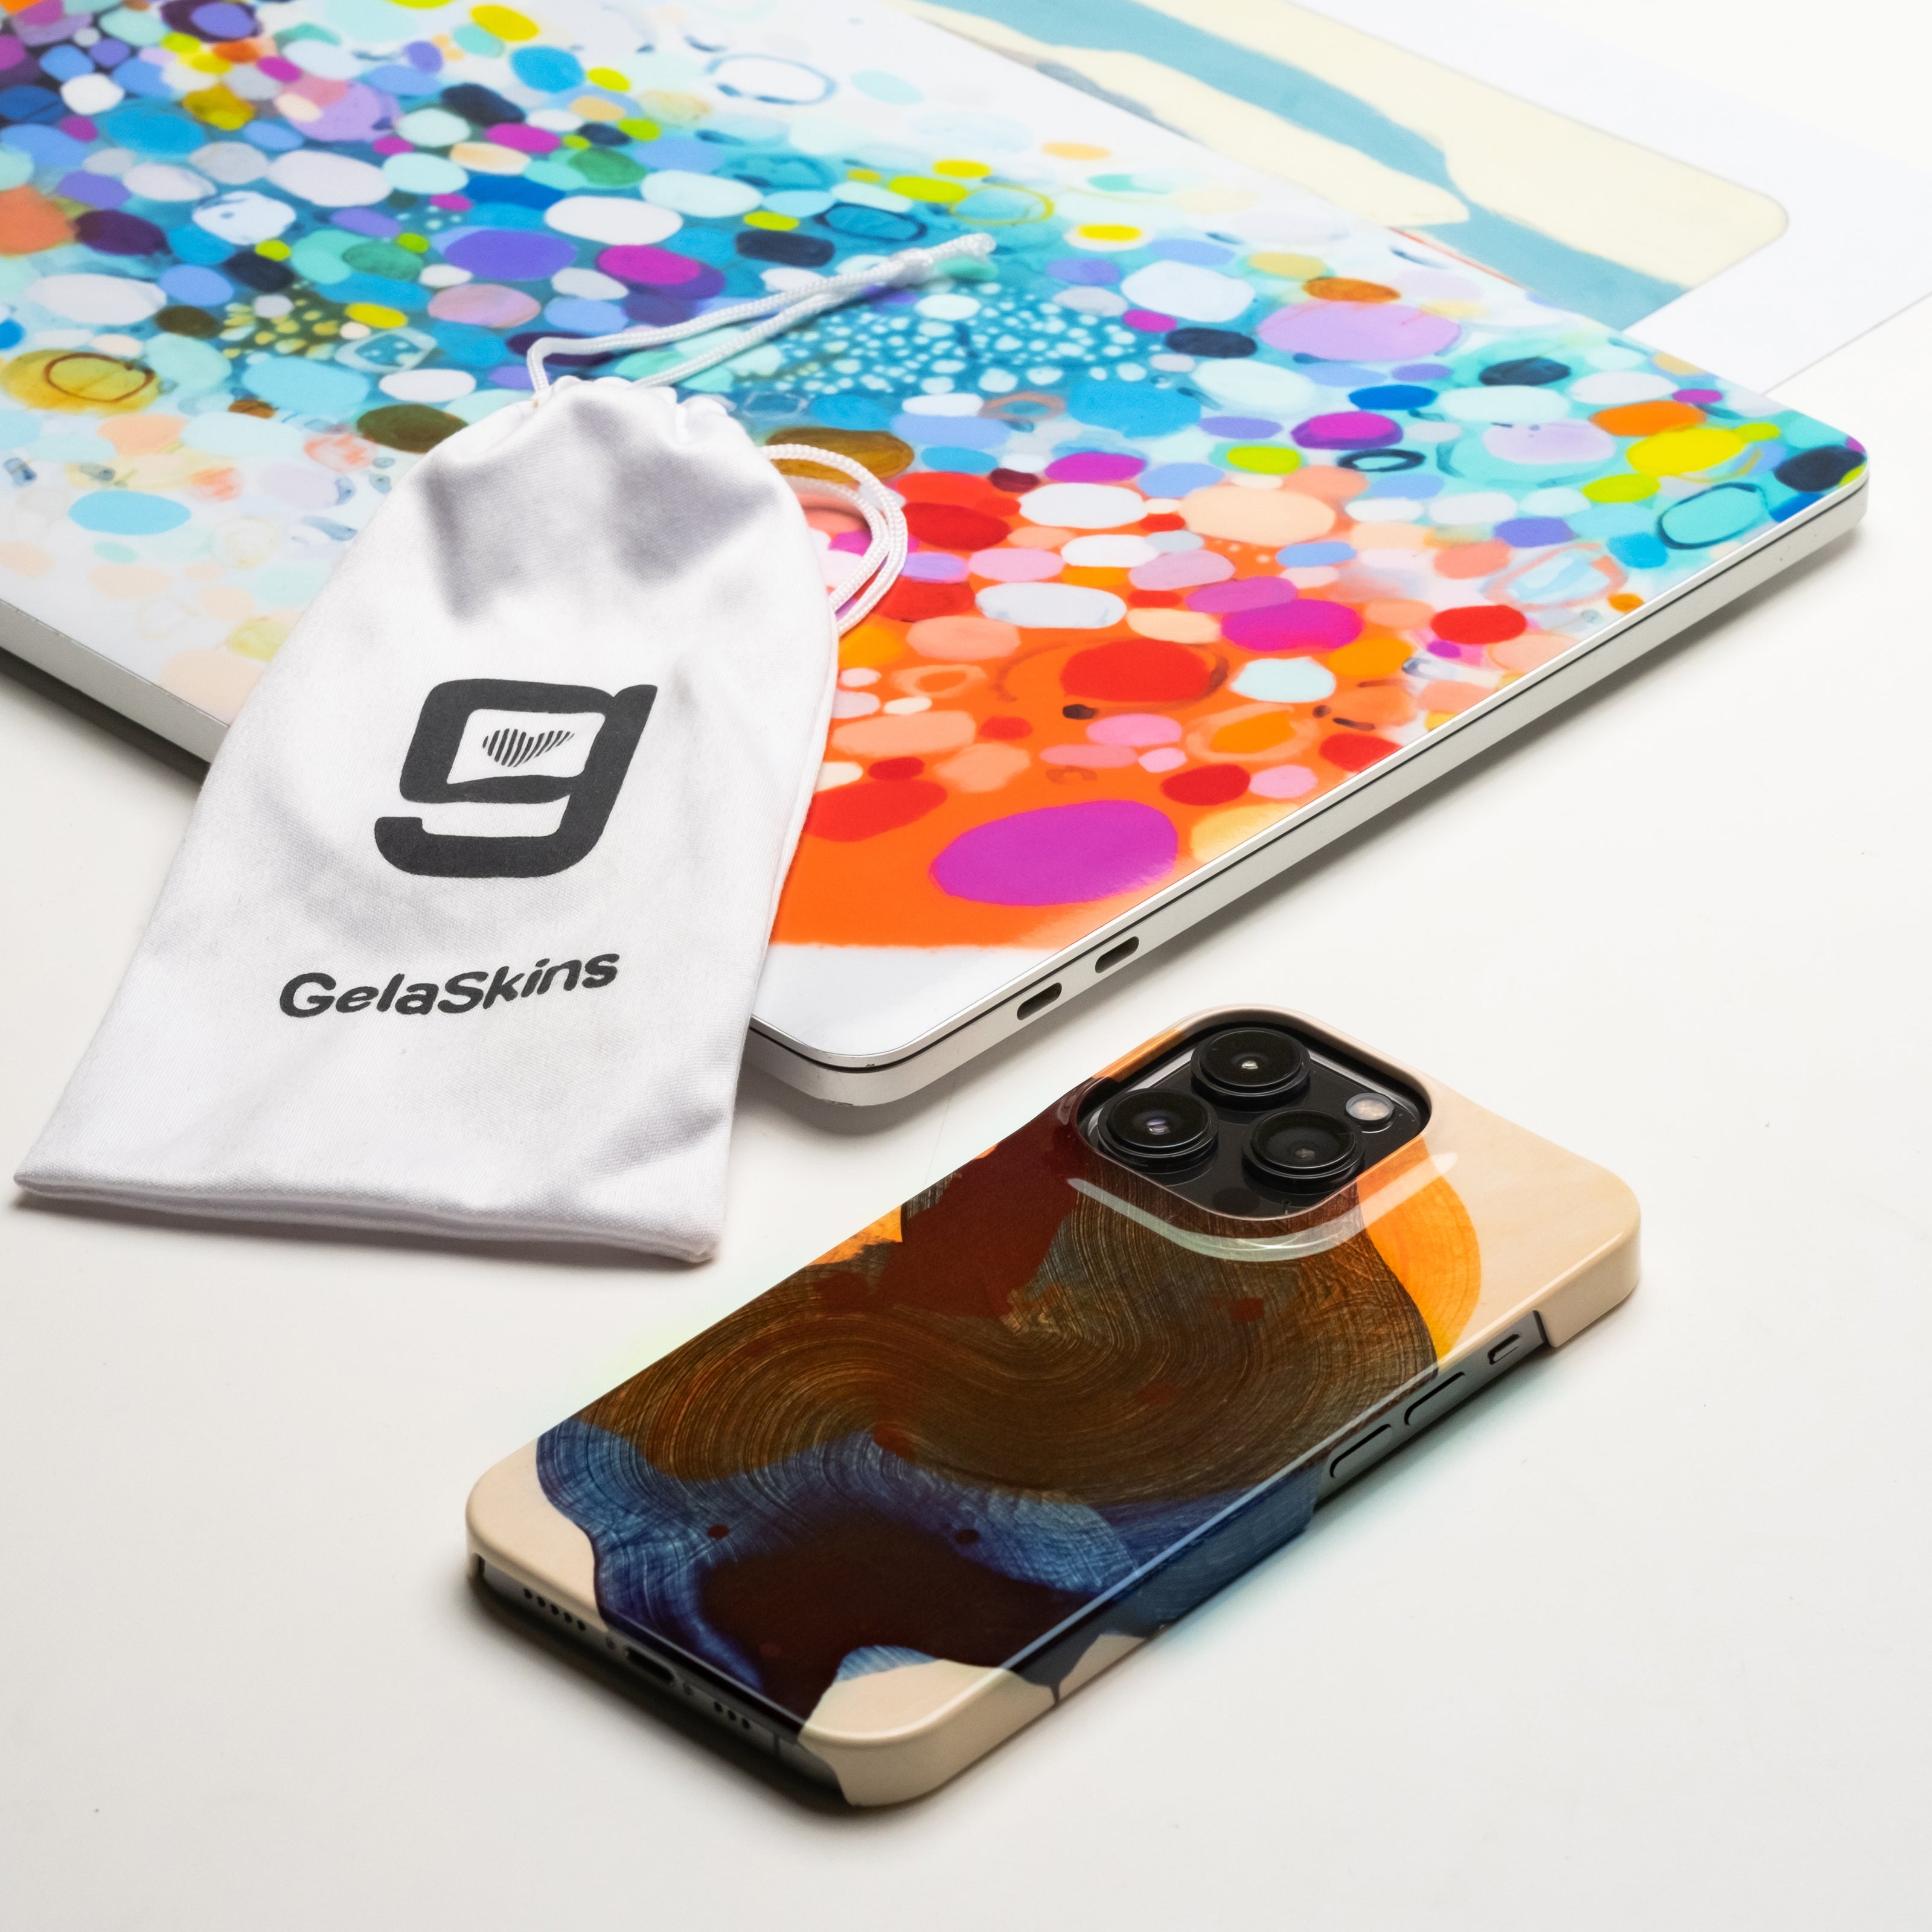 Artist Claire Desjardins' artworks appear on GelaSkins tech skins and SmartPhone cases